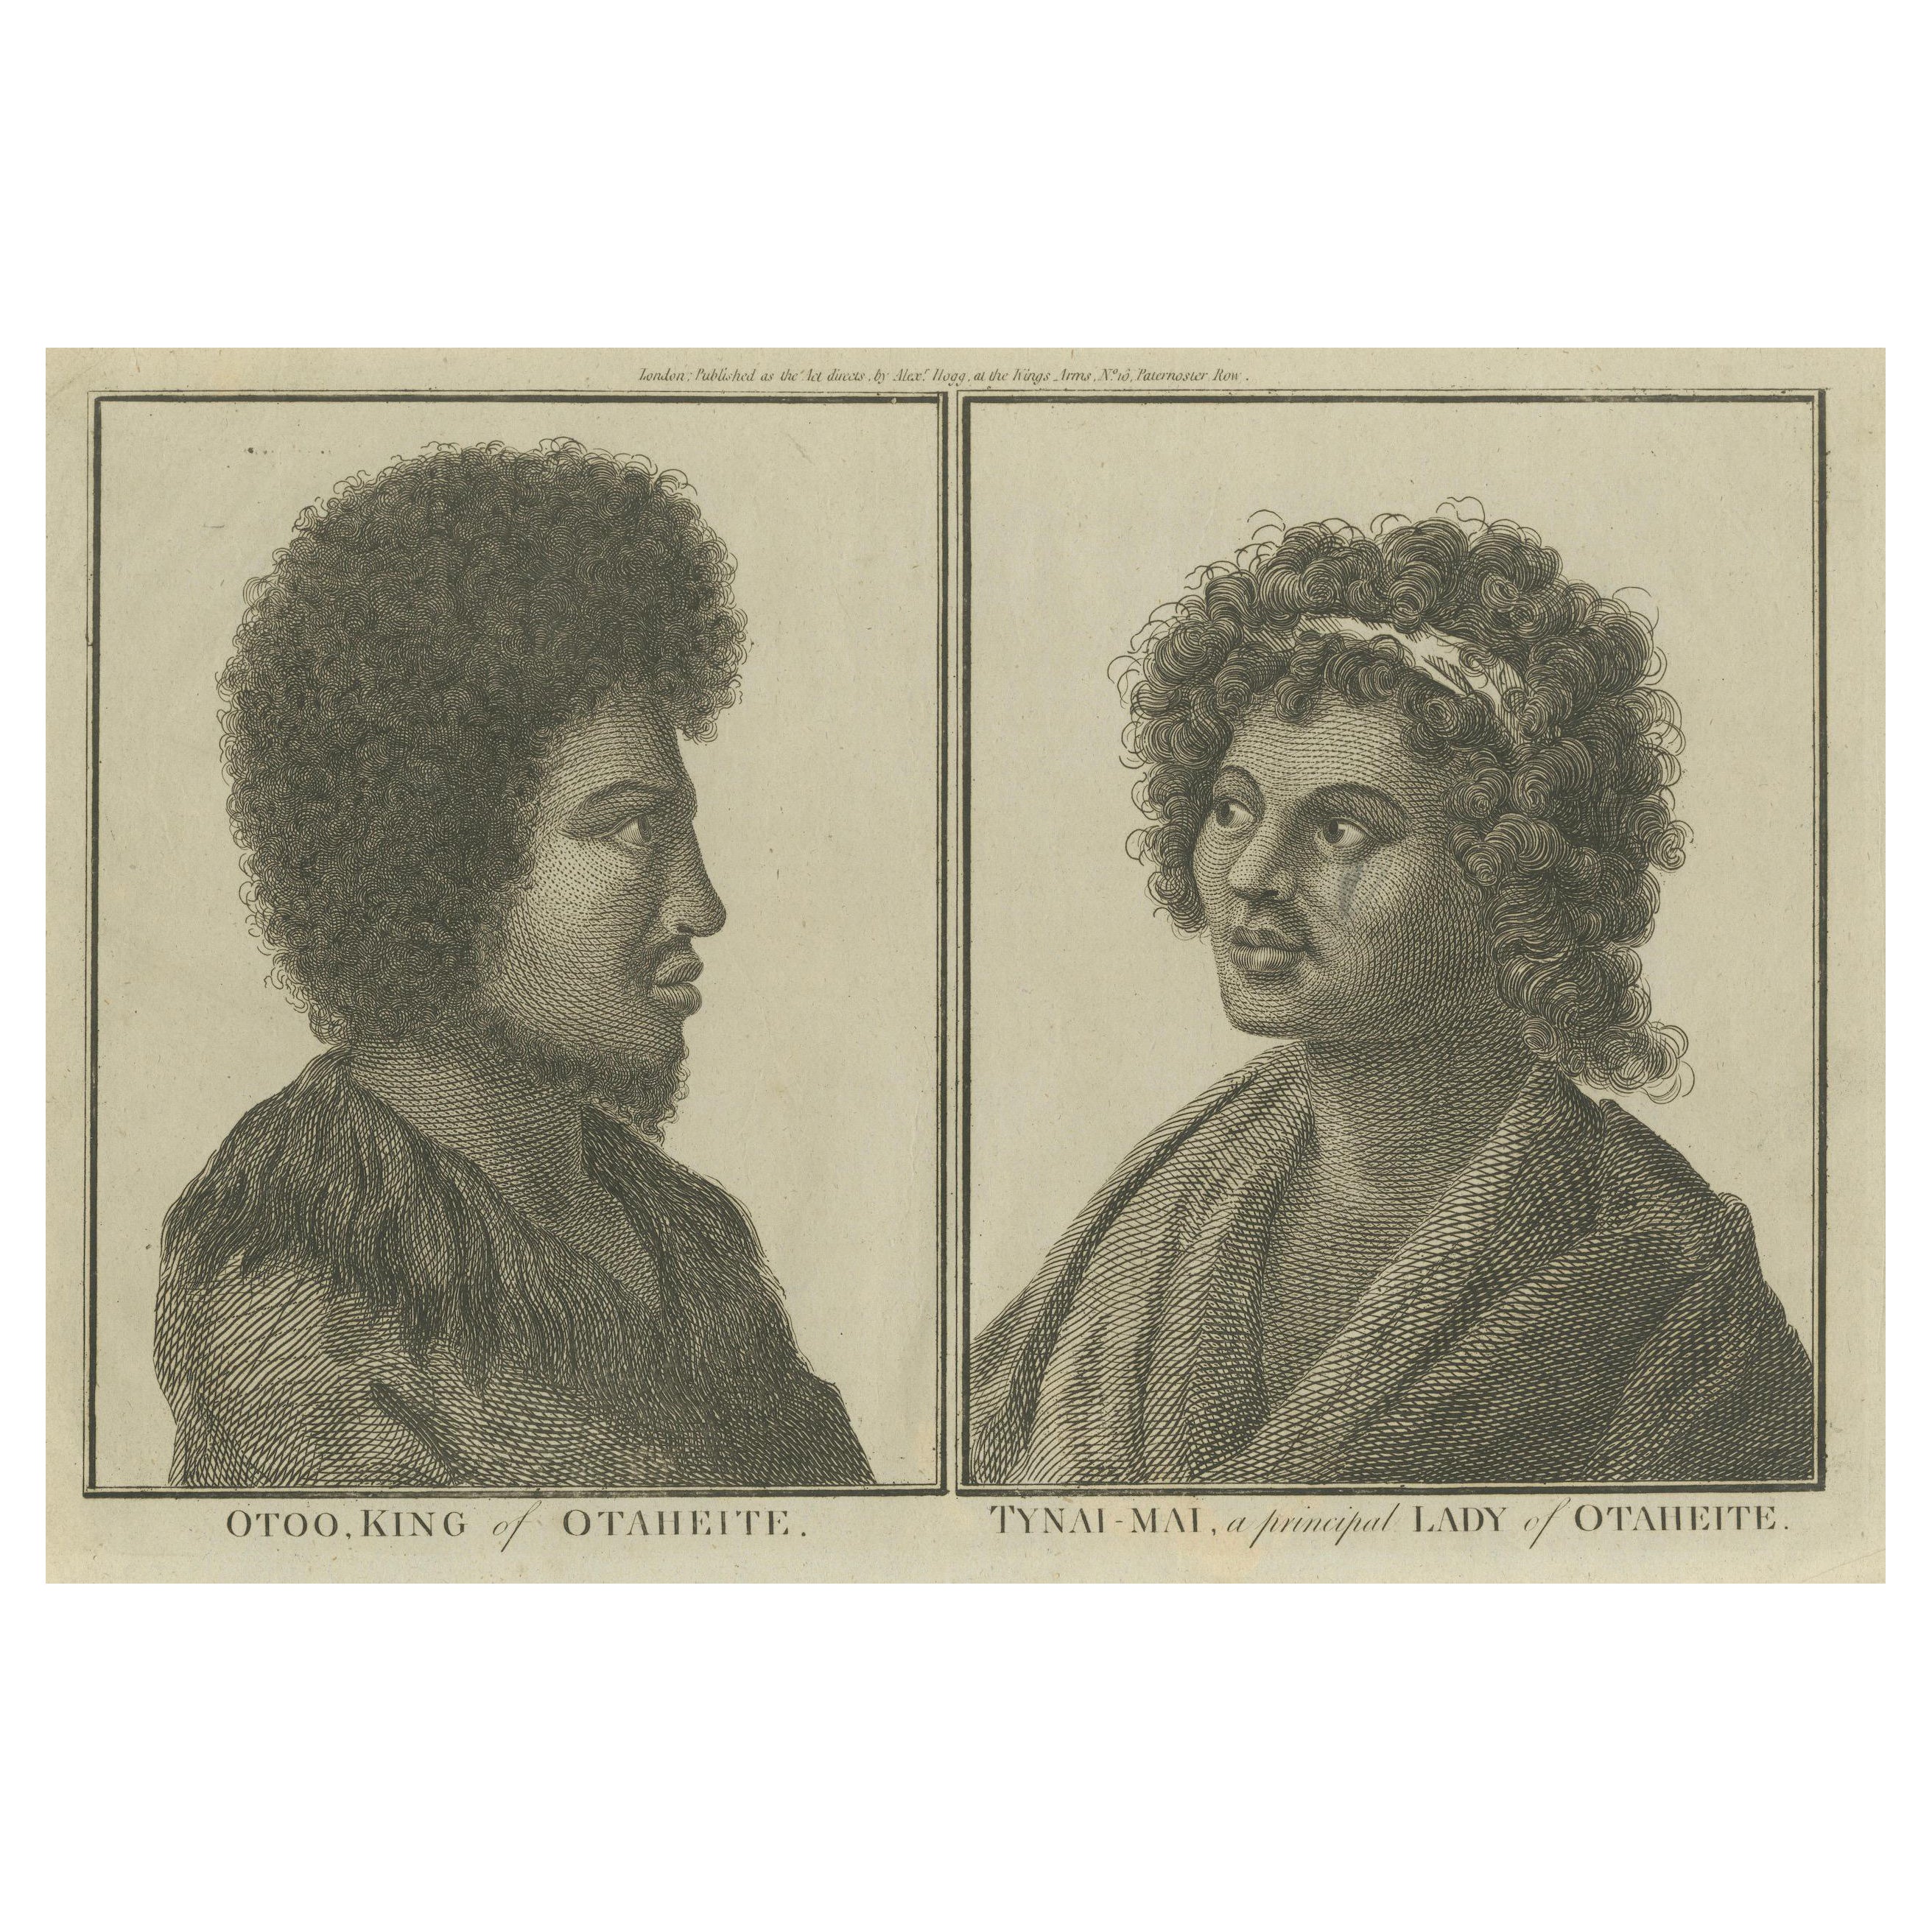 Profiles du souverain Otoo et Lady Tynai-Mai de Tahiti, publié vers 1785